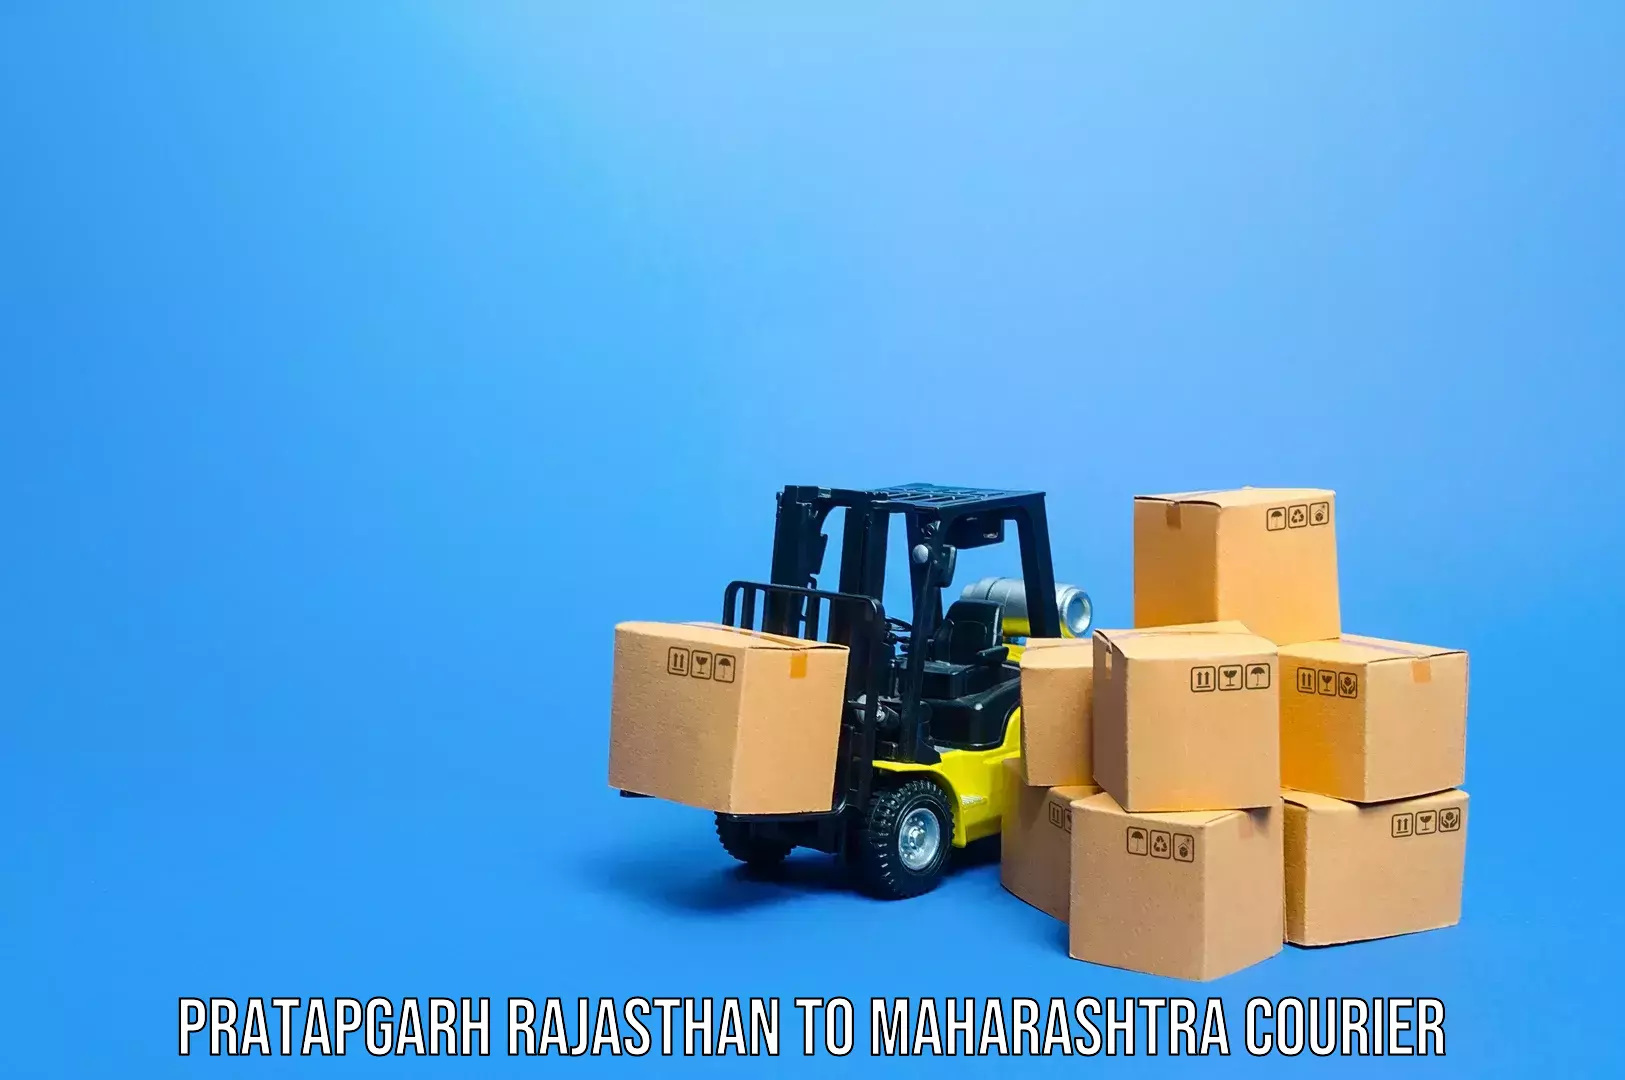 Luggage transport service Pratapgarh Rajasthan to Gadchiroli